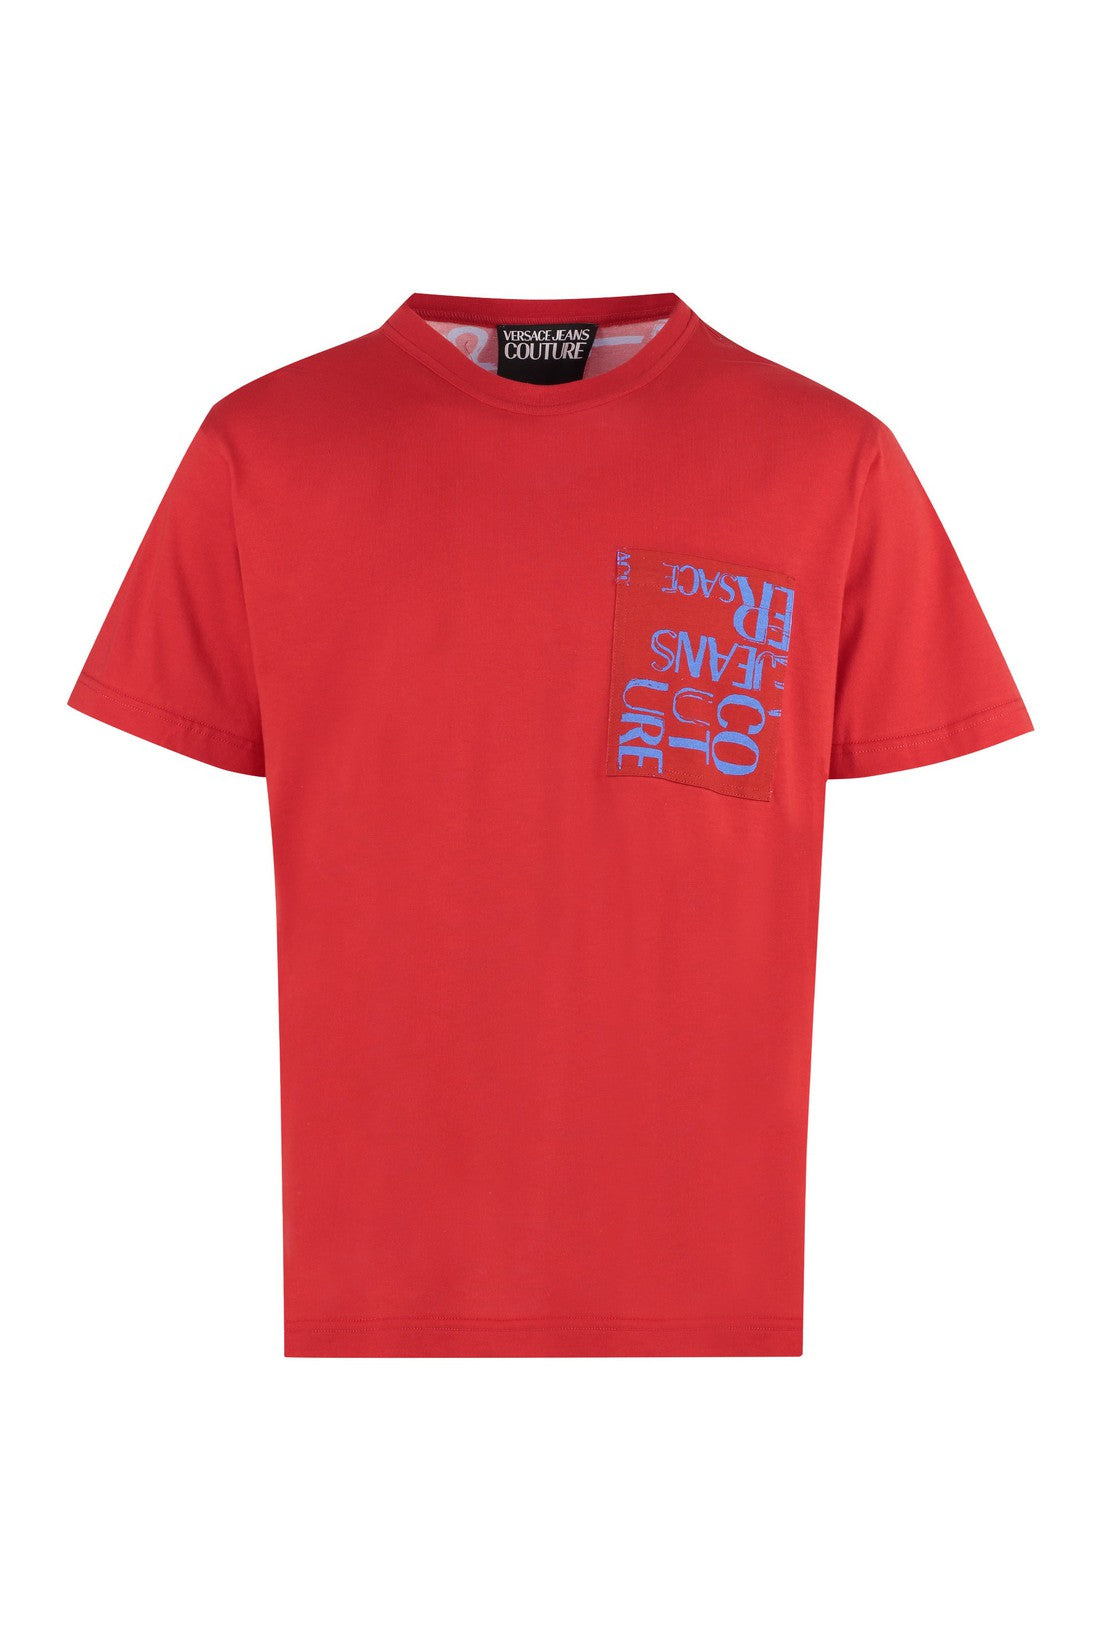 Piralo-OUTLET-SALE-Printed cotton T-shirt-ARCHIVIST